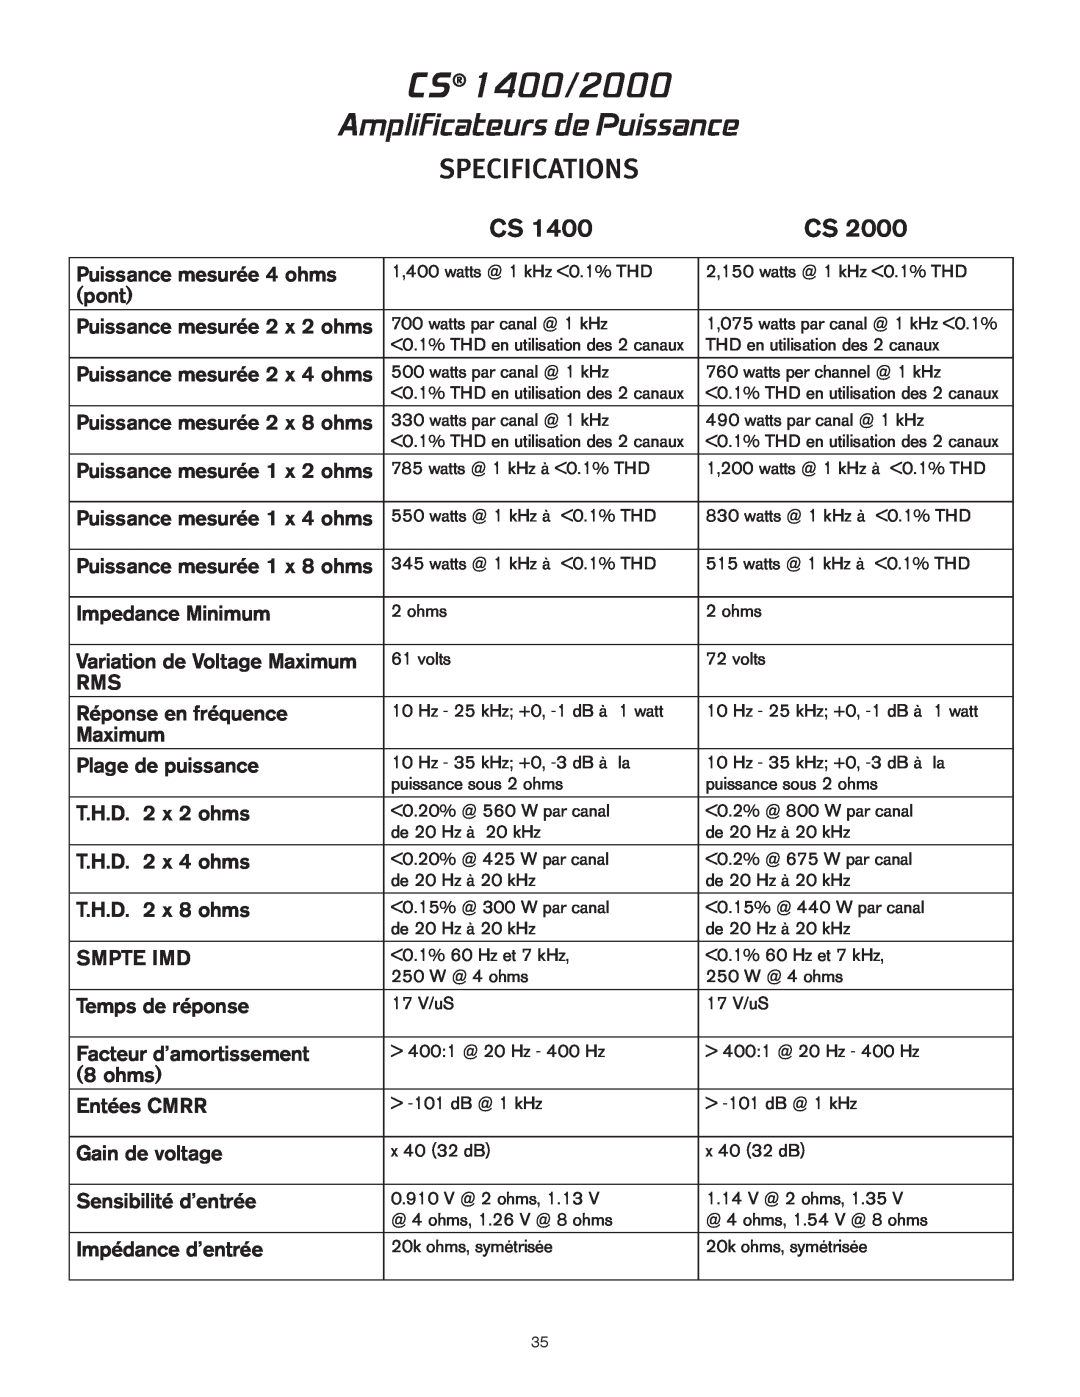 Peavey owner manual Amplificateurs de Puissance, CS 1400/2000, Specifications 